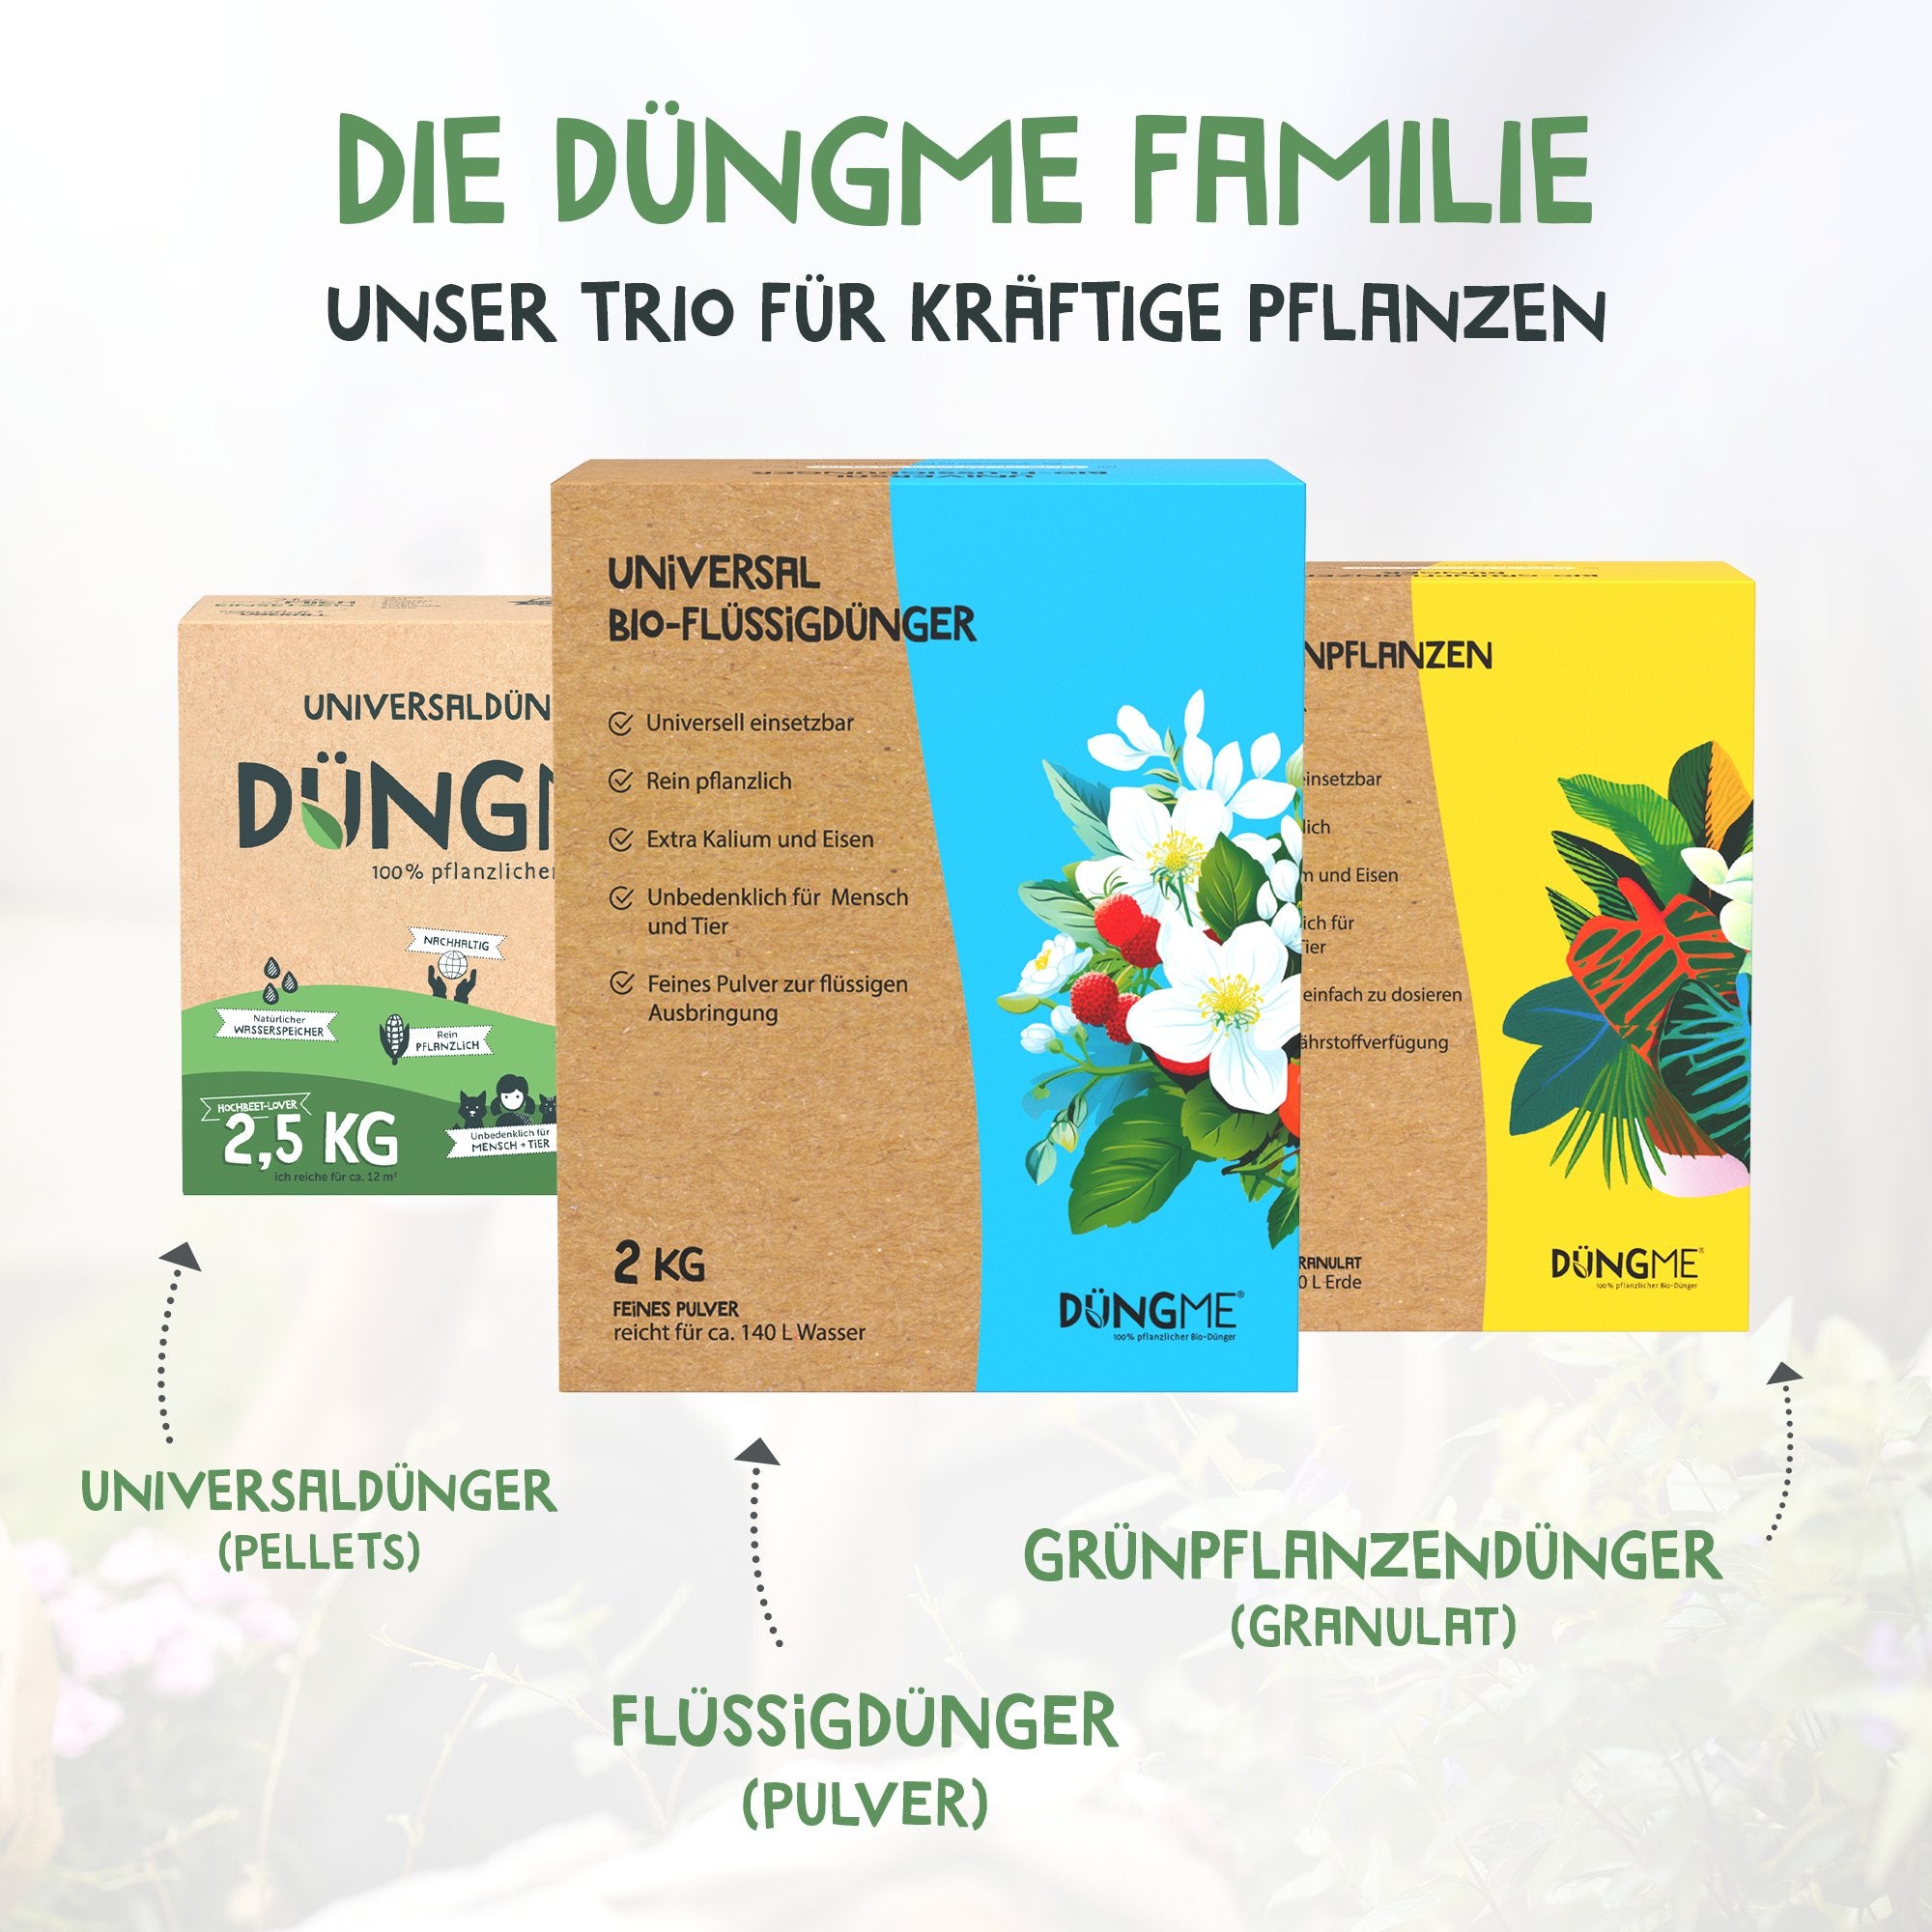 Bio-Grünpflanzendünger - 2 kg